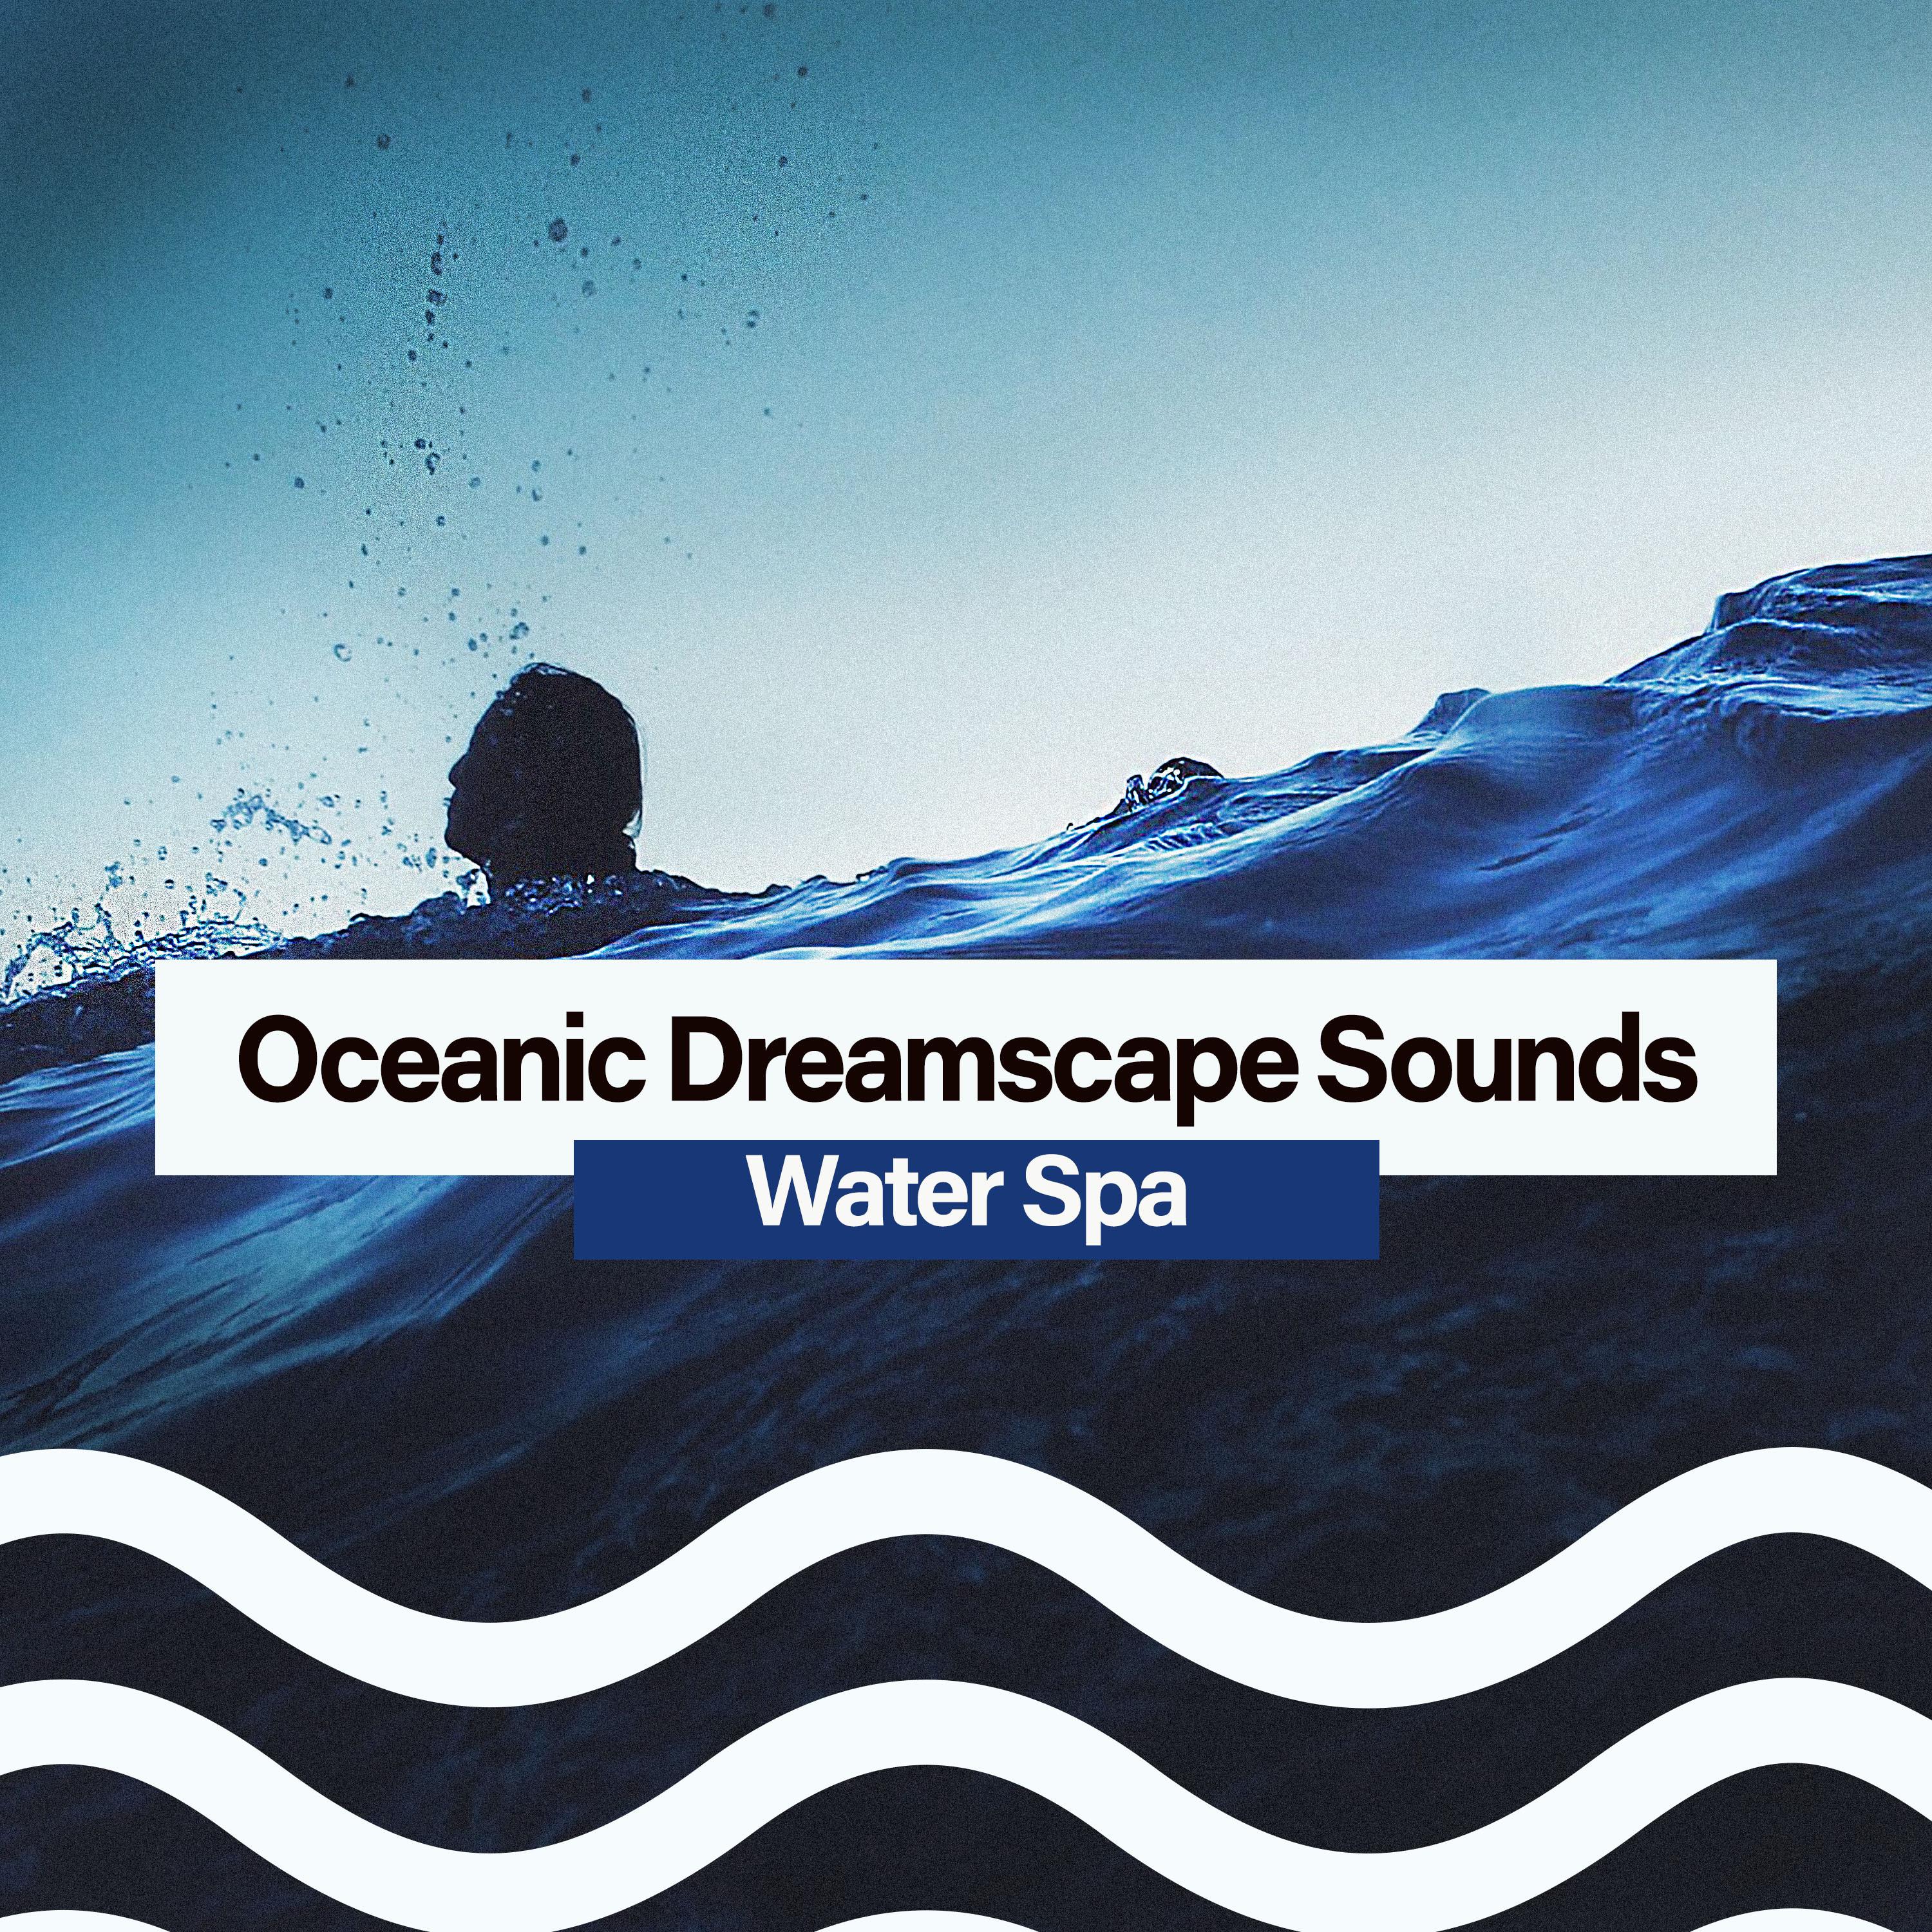 Oceanic Dreamscape Sounds